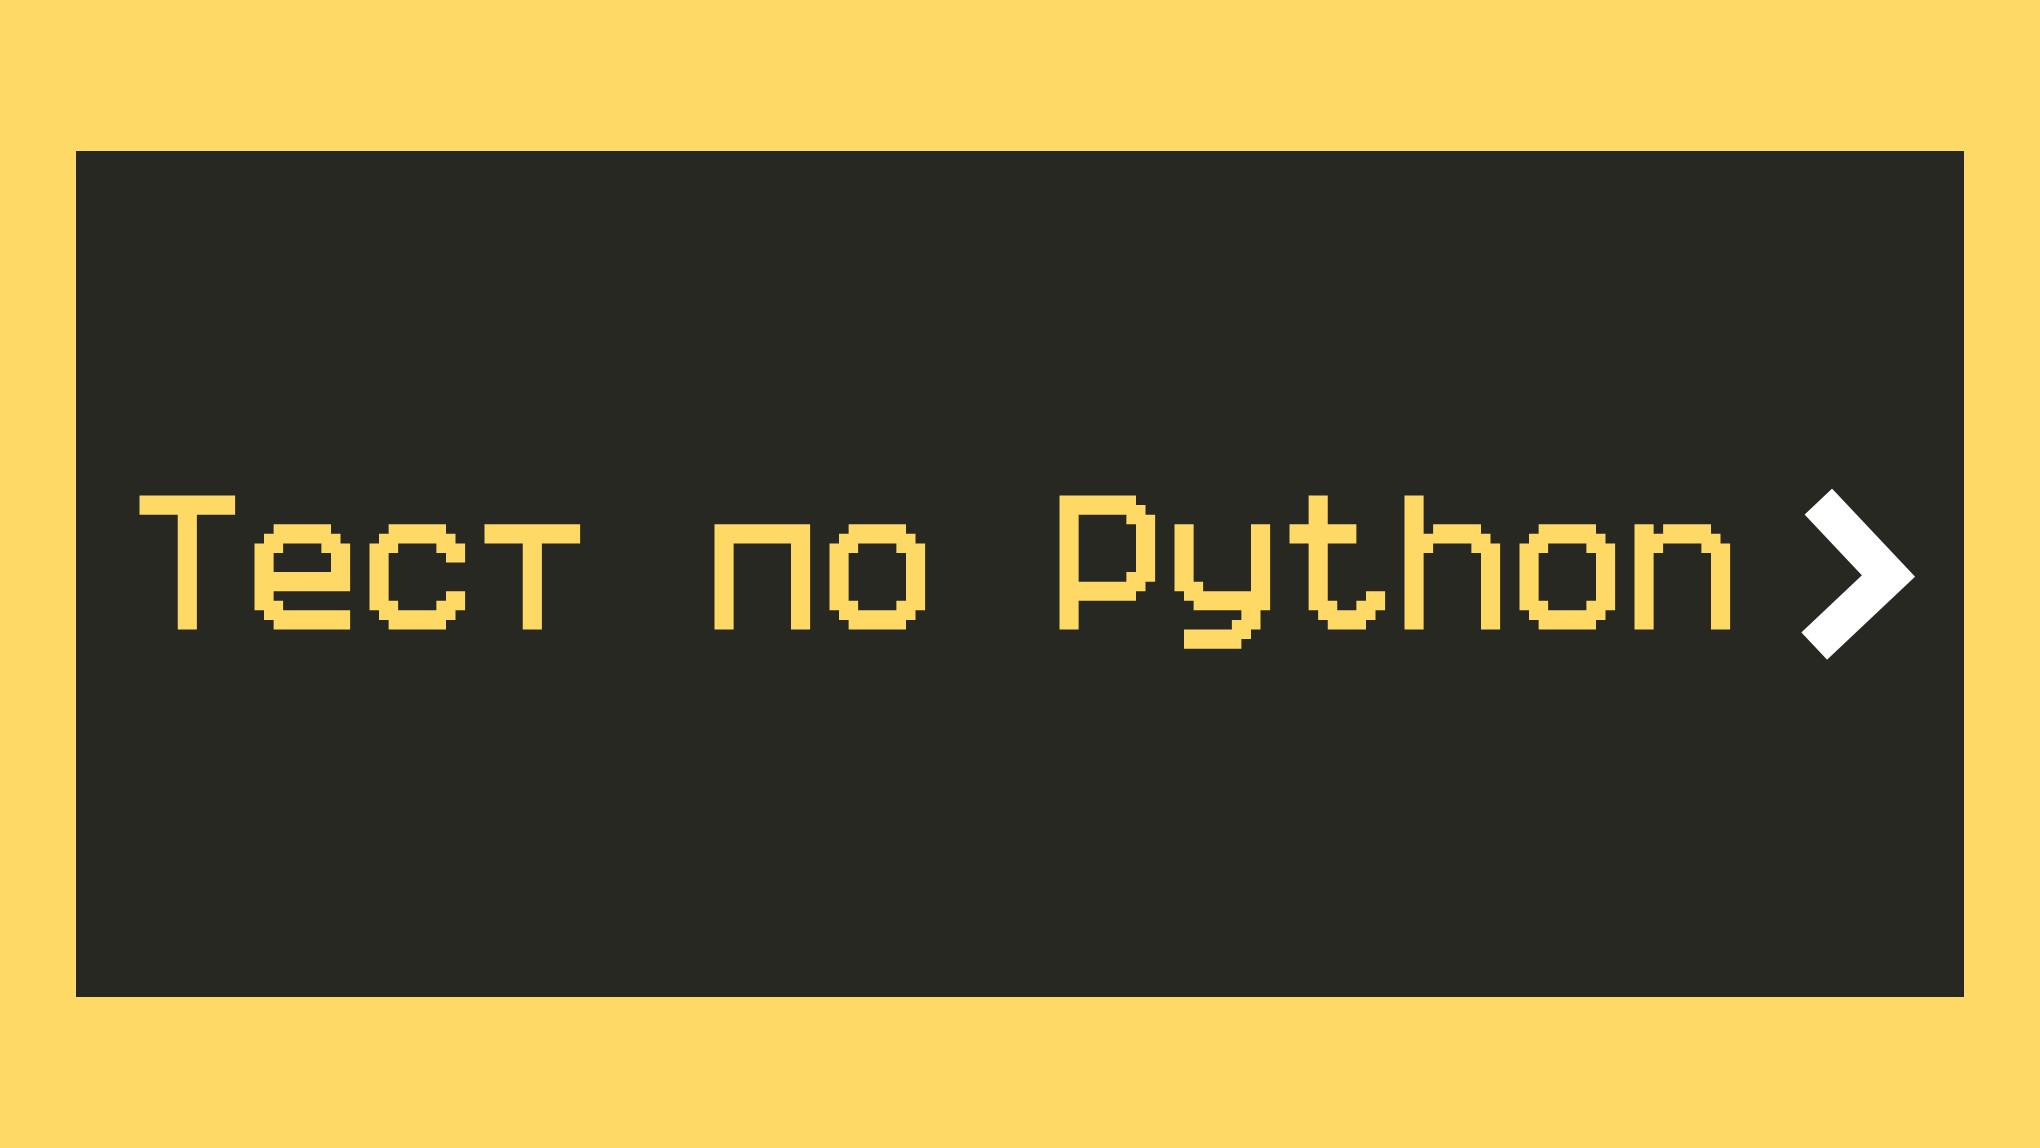 Проверка на знание языка Python для начинающих: как будет показан кортеж?